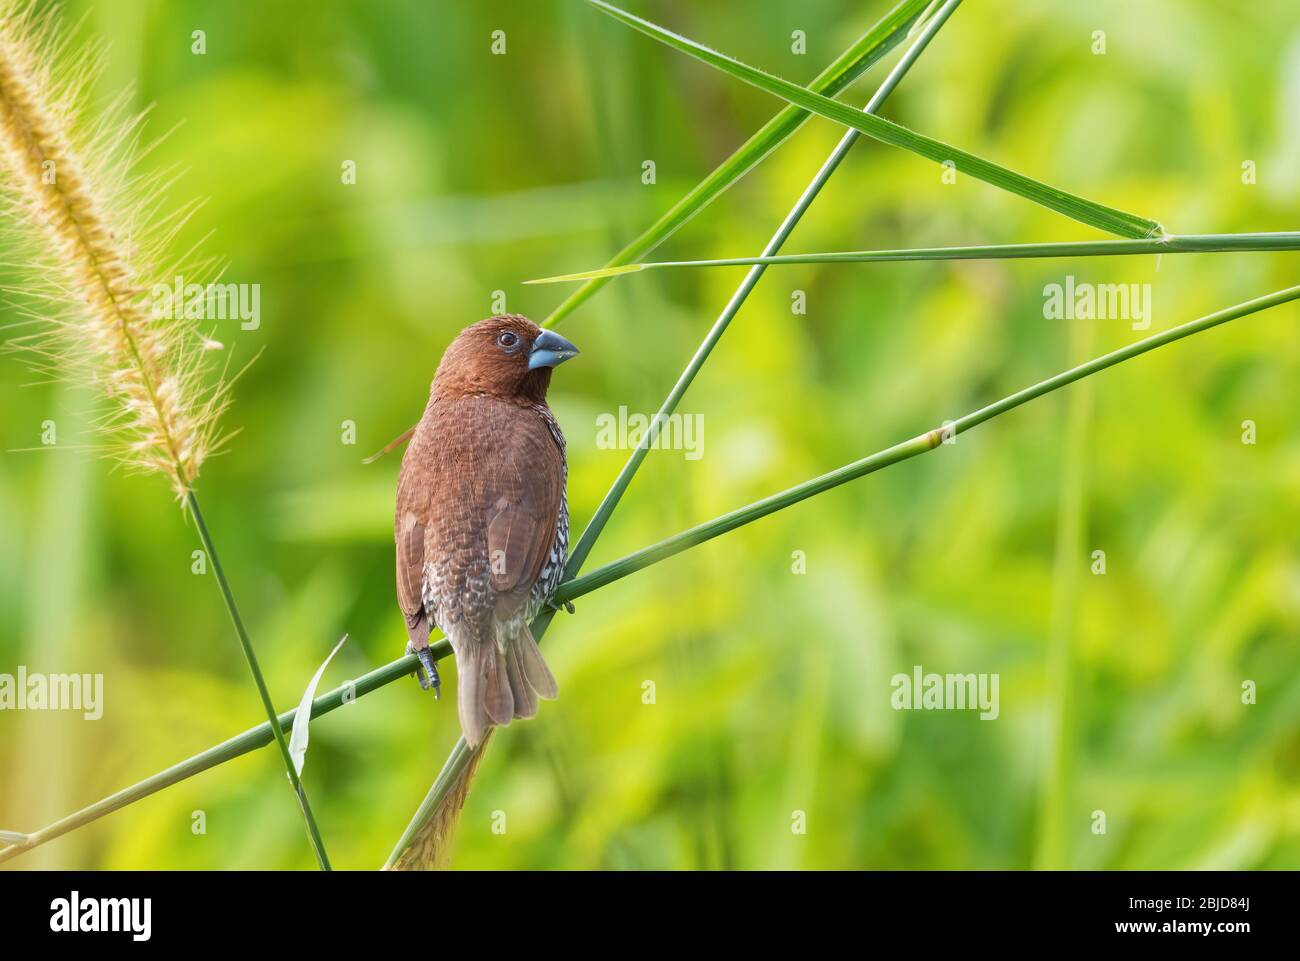 Muni scottata - Lonchura puntulata, bel piccolo uccello bruno che percola dalle foreste e dai boschi del Sud-Est Asiatico, Pangkor, Malesia. Foto Stock